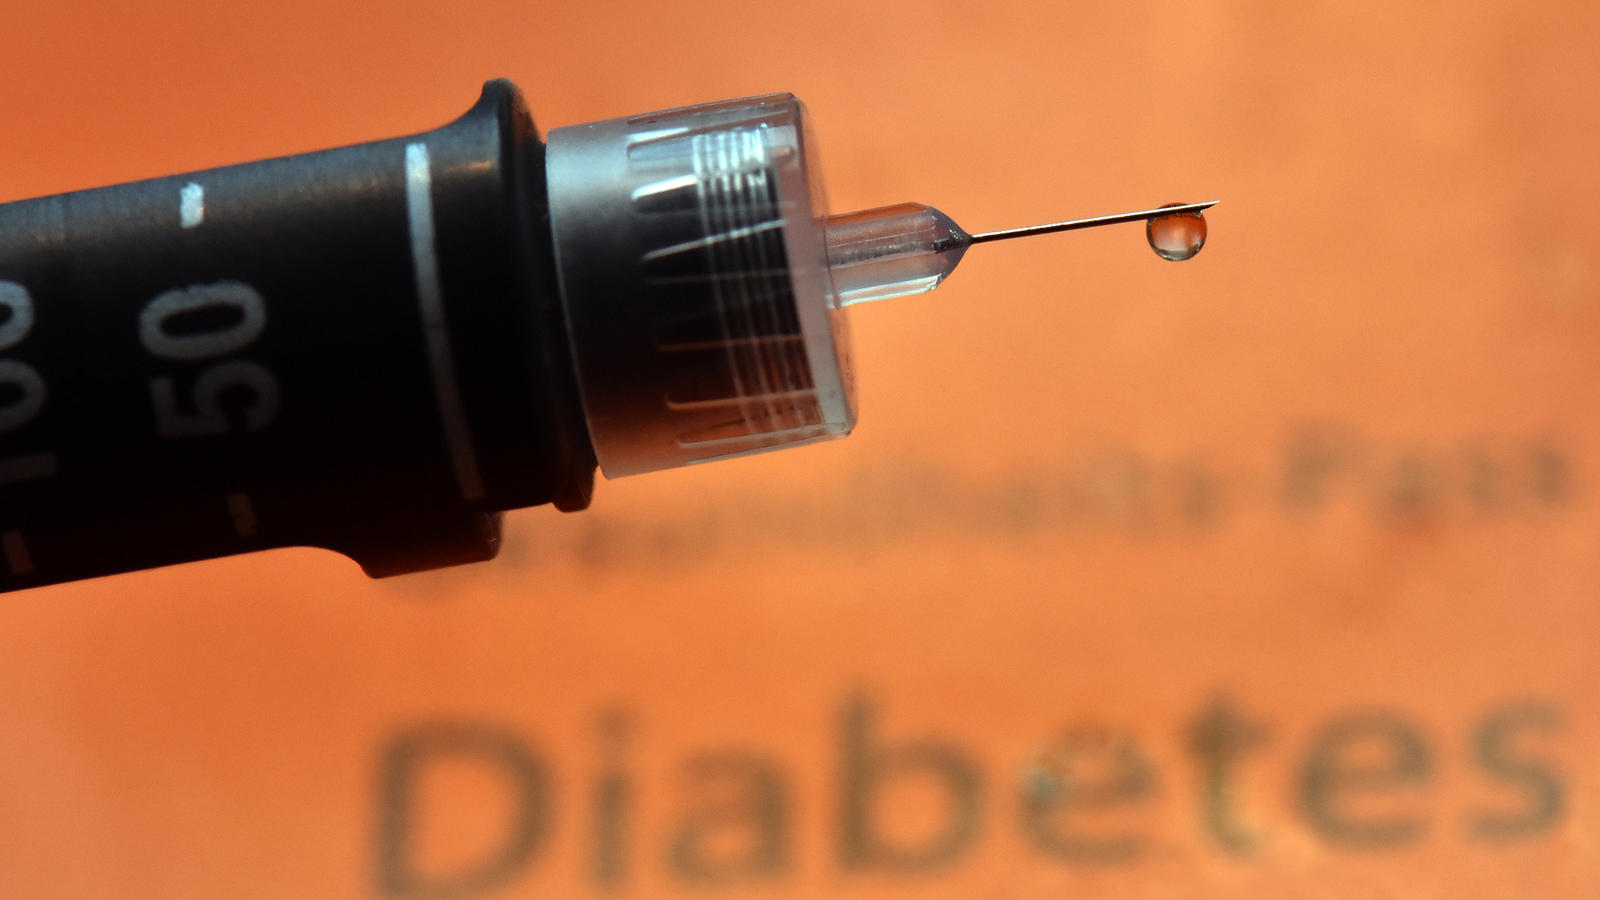 ARCHIV - ILLUSTRATION - Ein Tropfen Insulin hängt am 09.06.2015 in Dresden (Sachsen) an der Nadel einer wiederverwendbaren Spritze, einem sogenannten Pen. In Deutschland leben immer mehr Menschen mit Diabetes: Inzwischen leidet rund jeder zehnte Bund